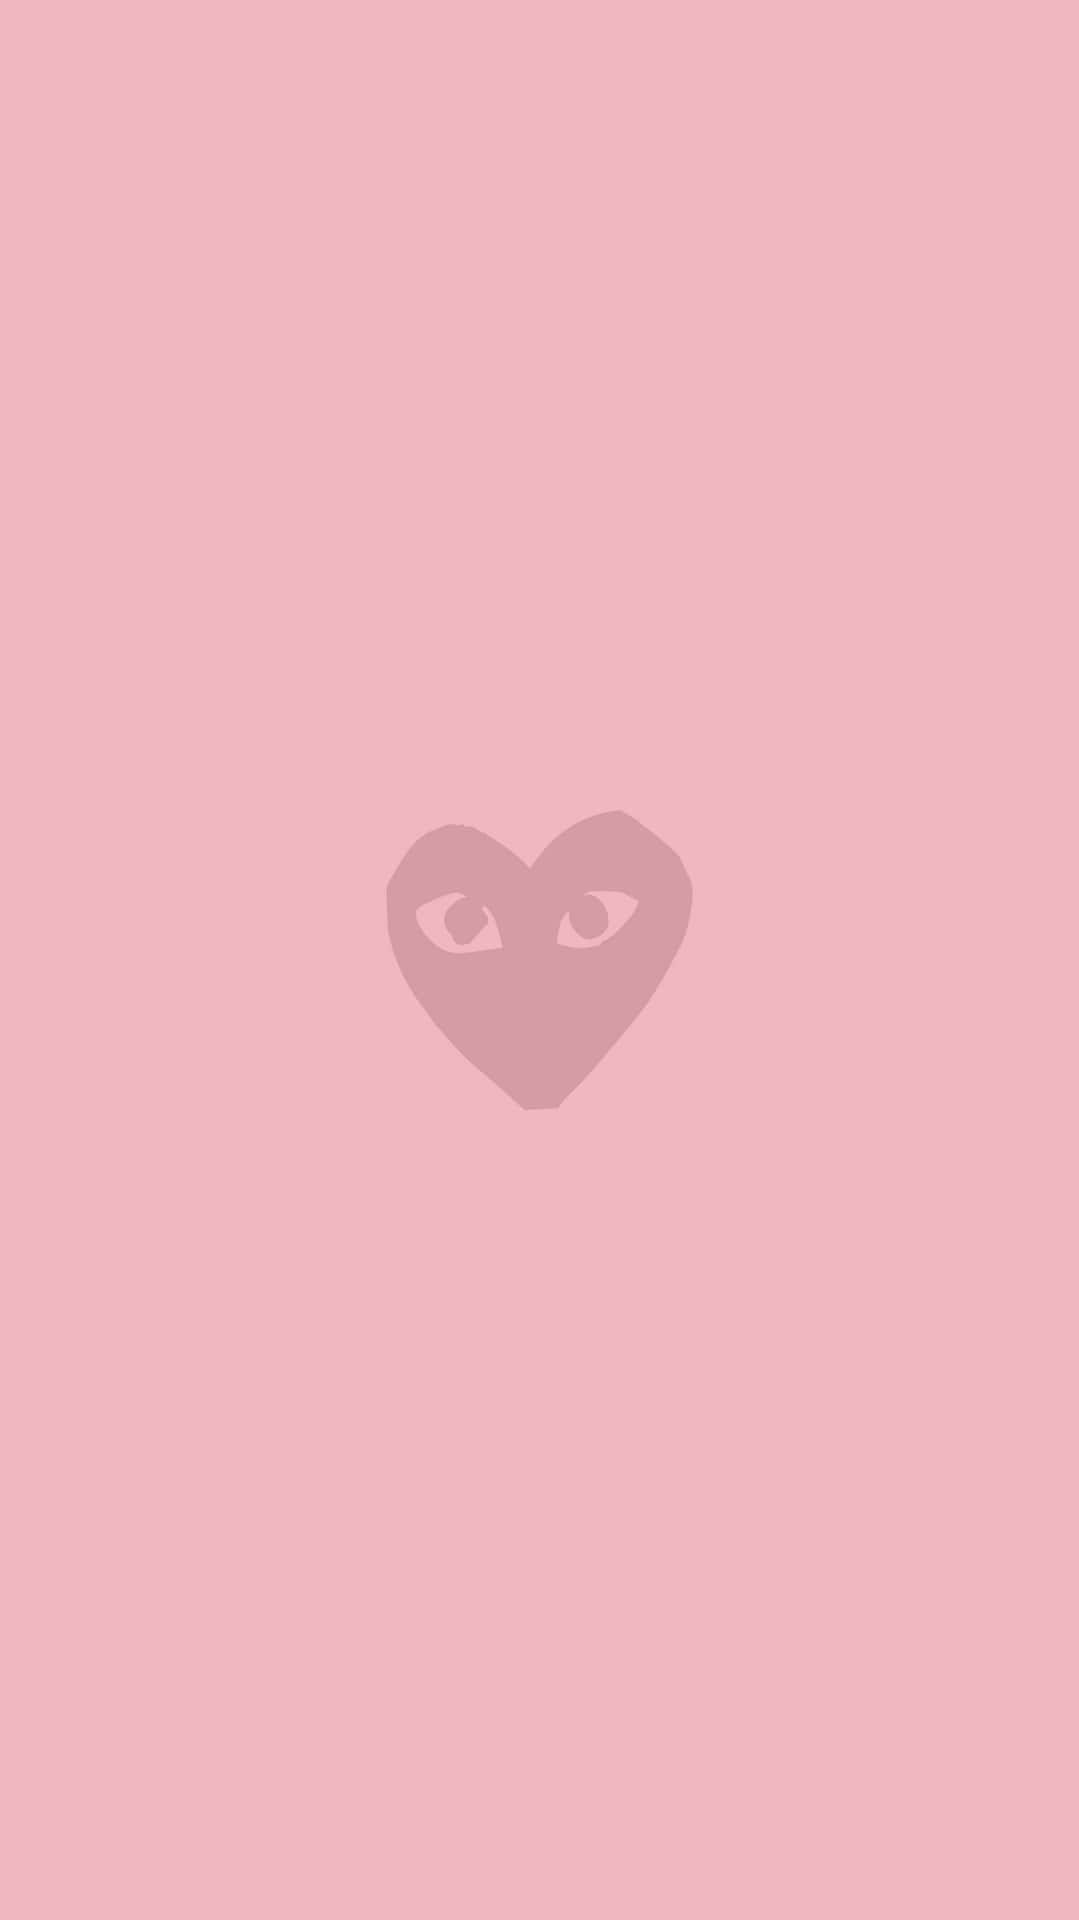 Logosimple De Cdg Play En Color Rosa Fondo de pantalla